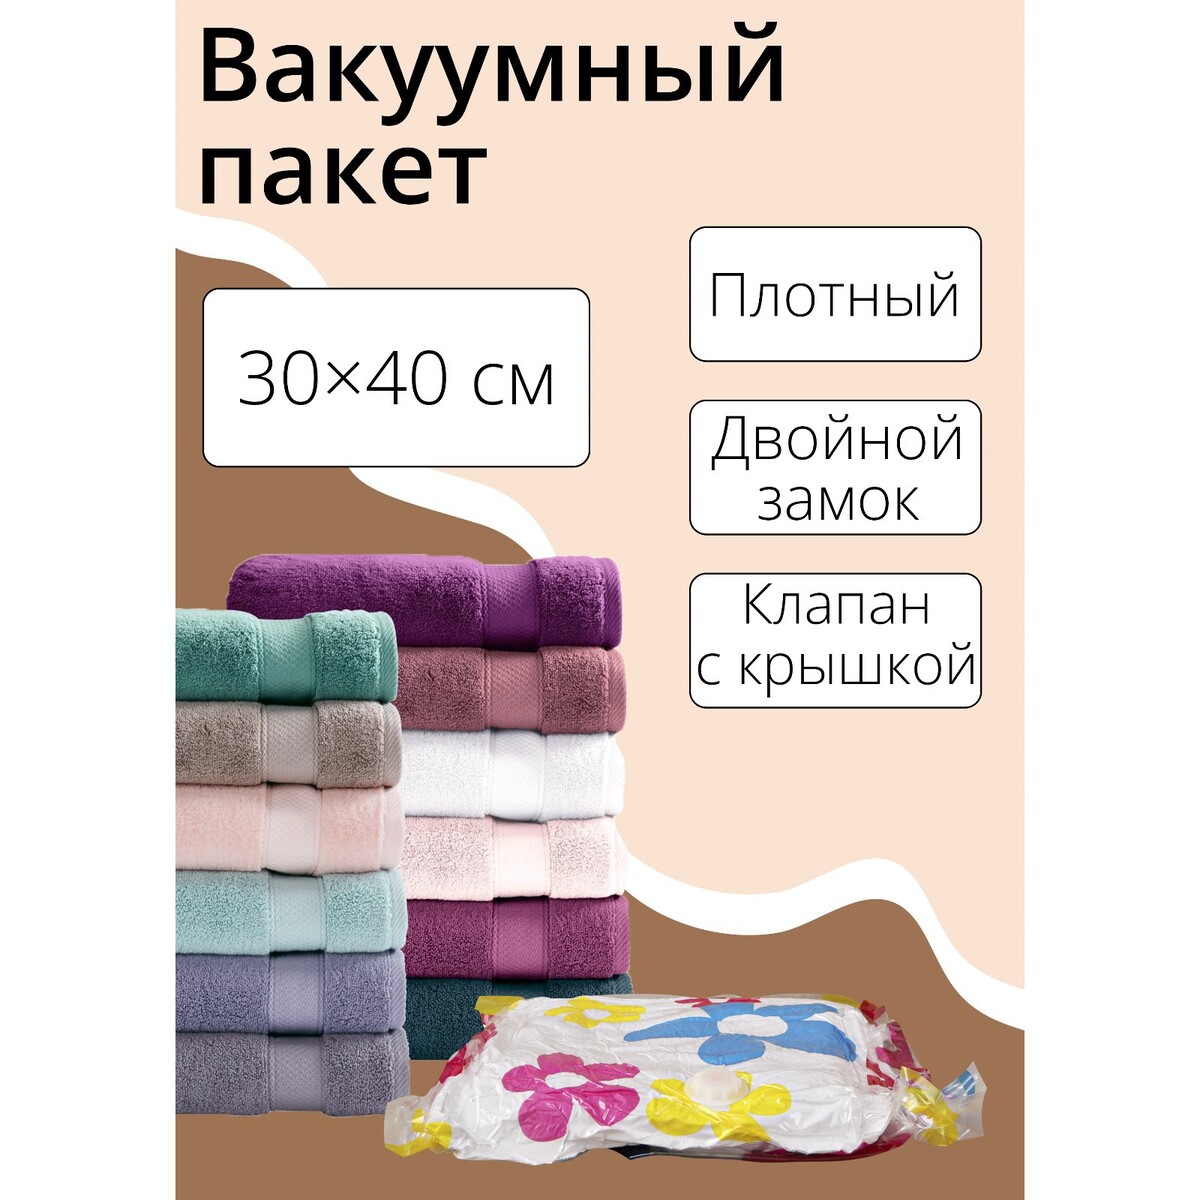 Вакуумный пакет для хранения вещей доляна, 30×40 см, цветной, с рисунком корзина для хранения плетеная доляна